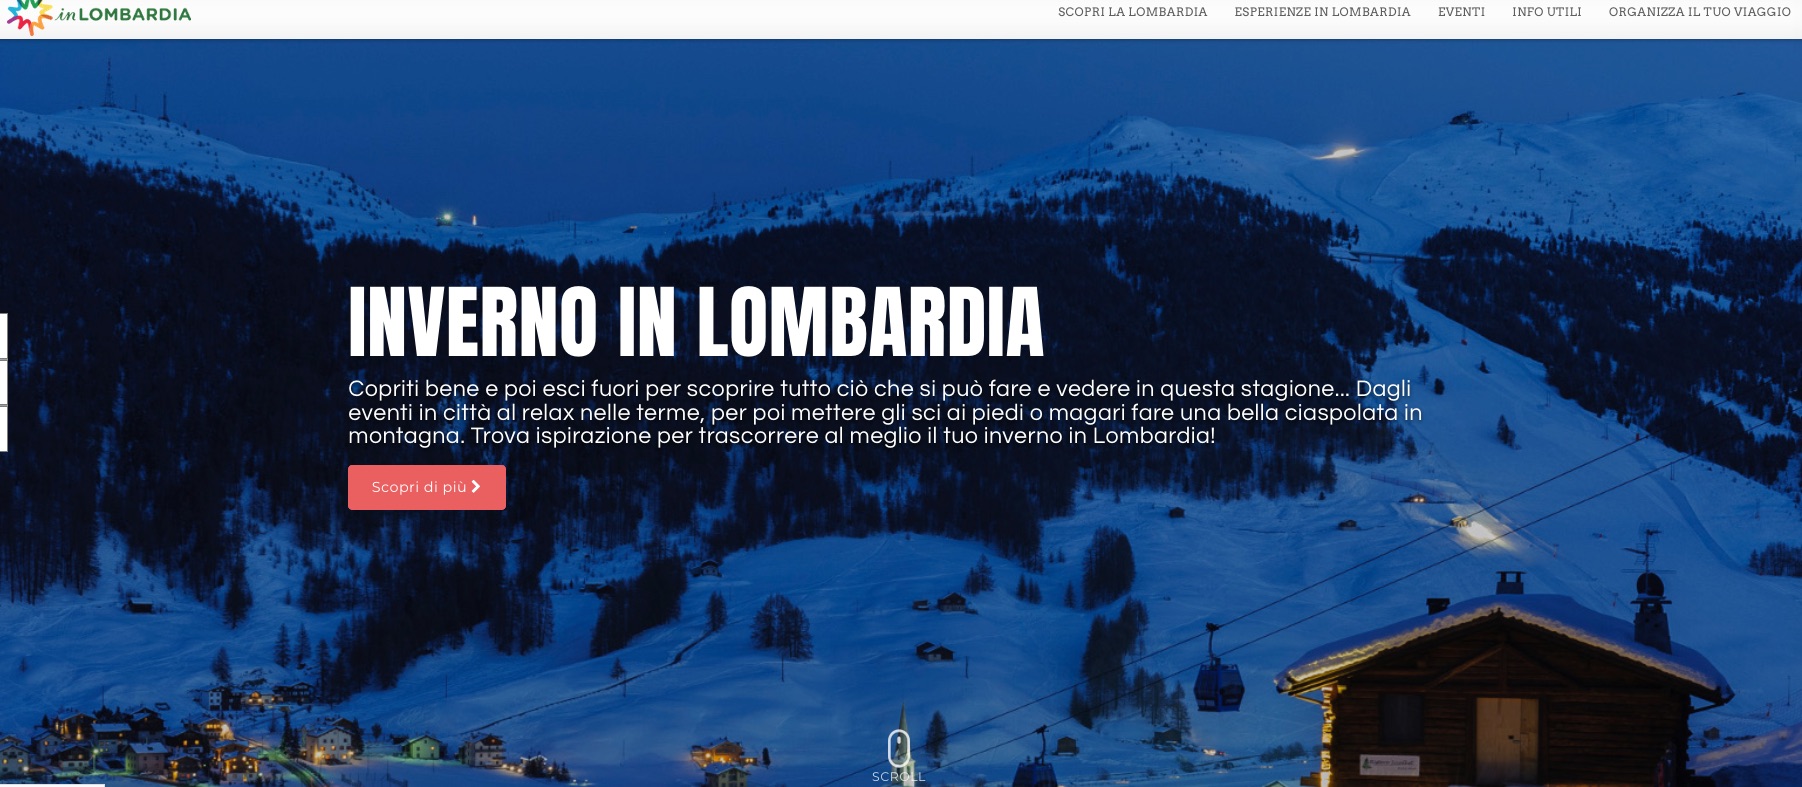 Regione Lombardia  lancia app di gamification e promozione turistica